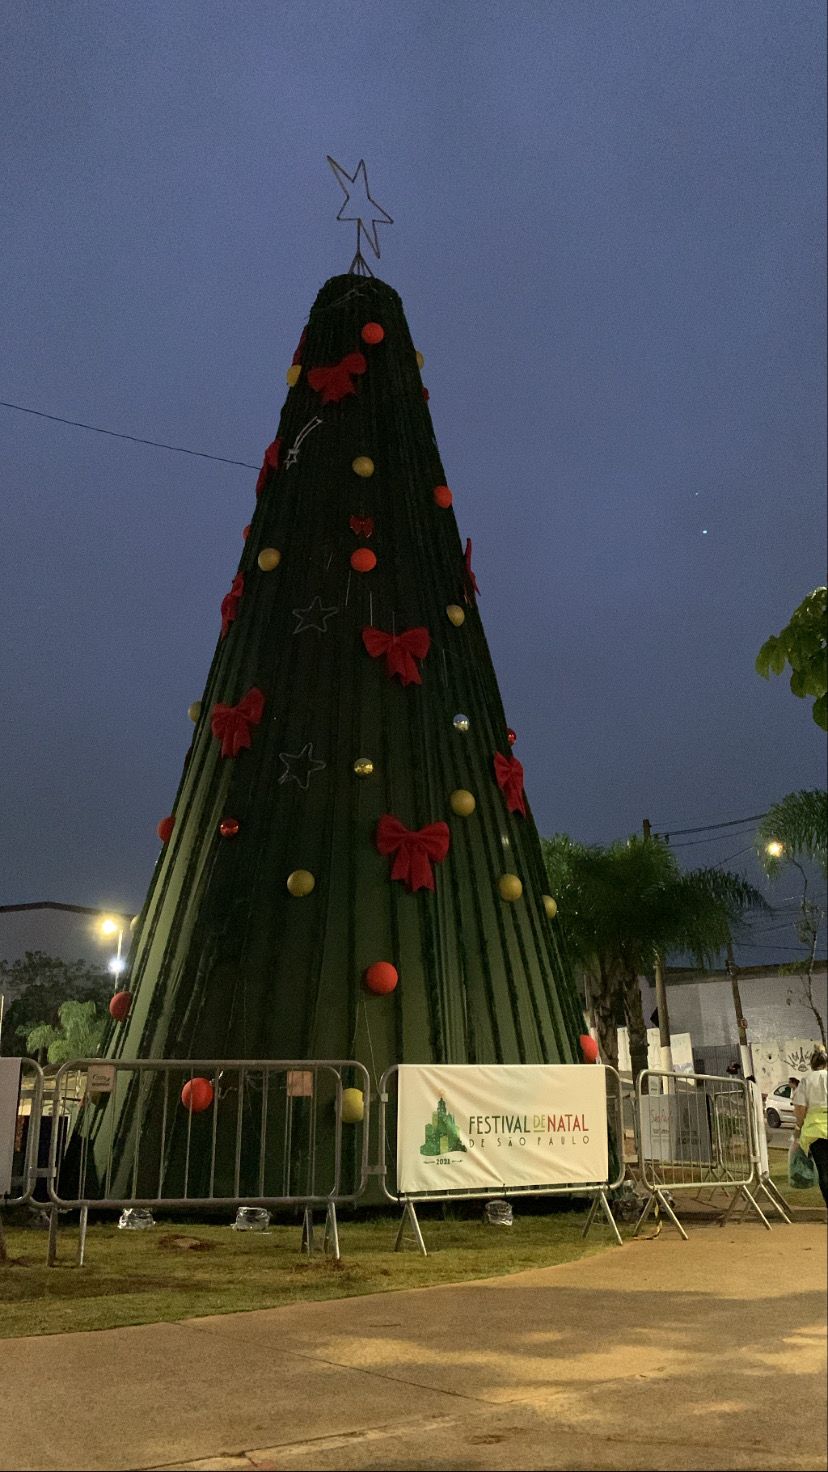 Festival de Natal inaugura árvore de 15 metros na Cidade Tiradentes |  Subprefeitura Cidade Tiradentes | Prefeitura da Cidade de São Paulo